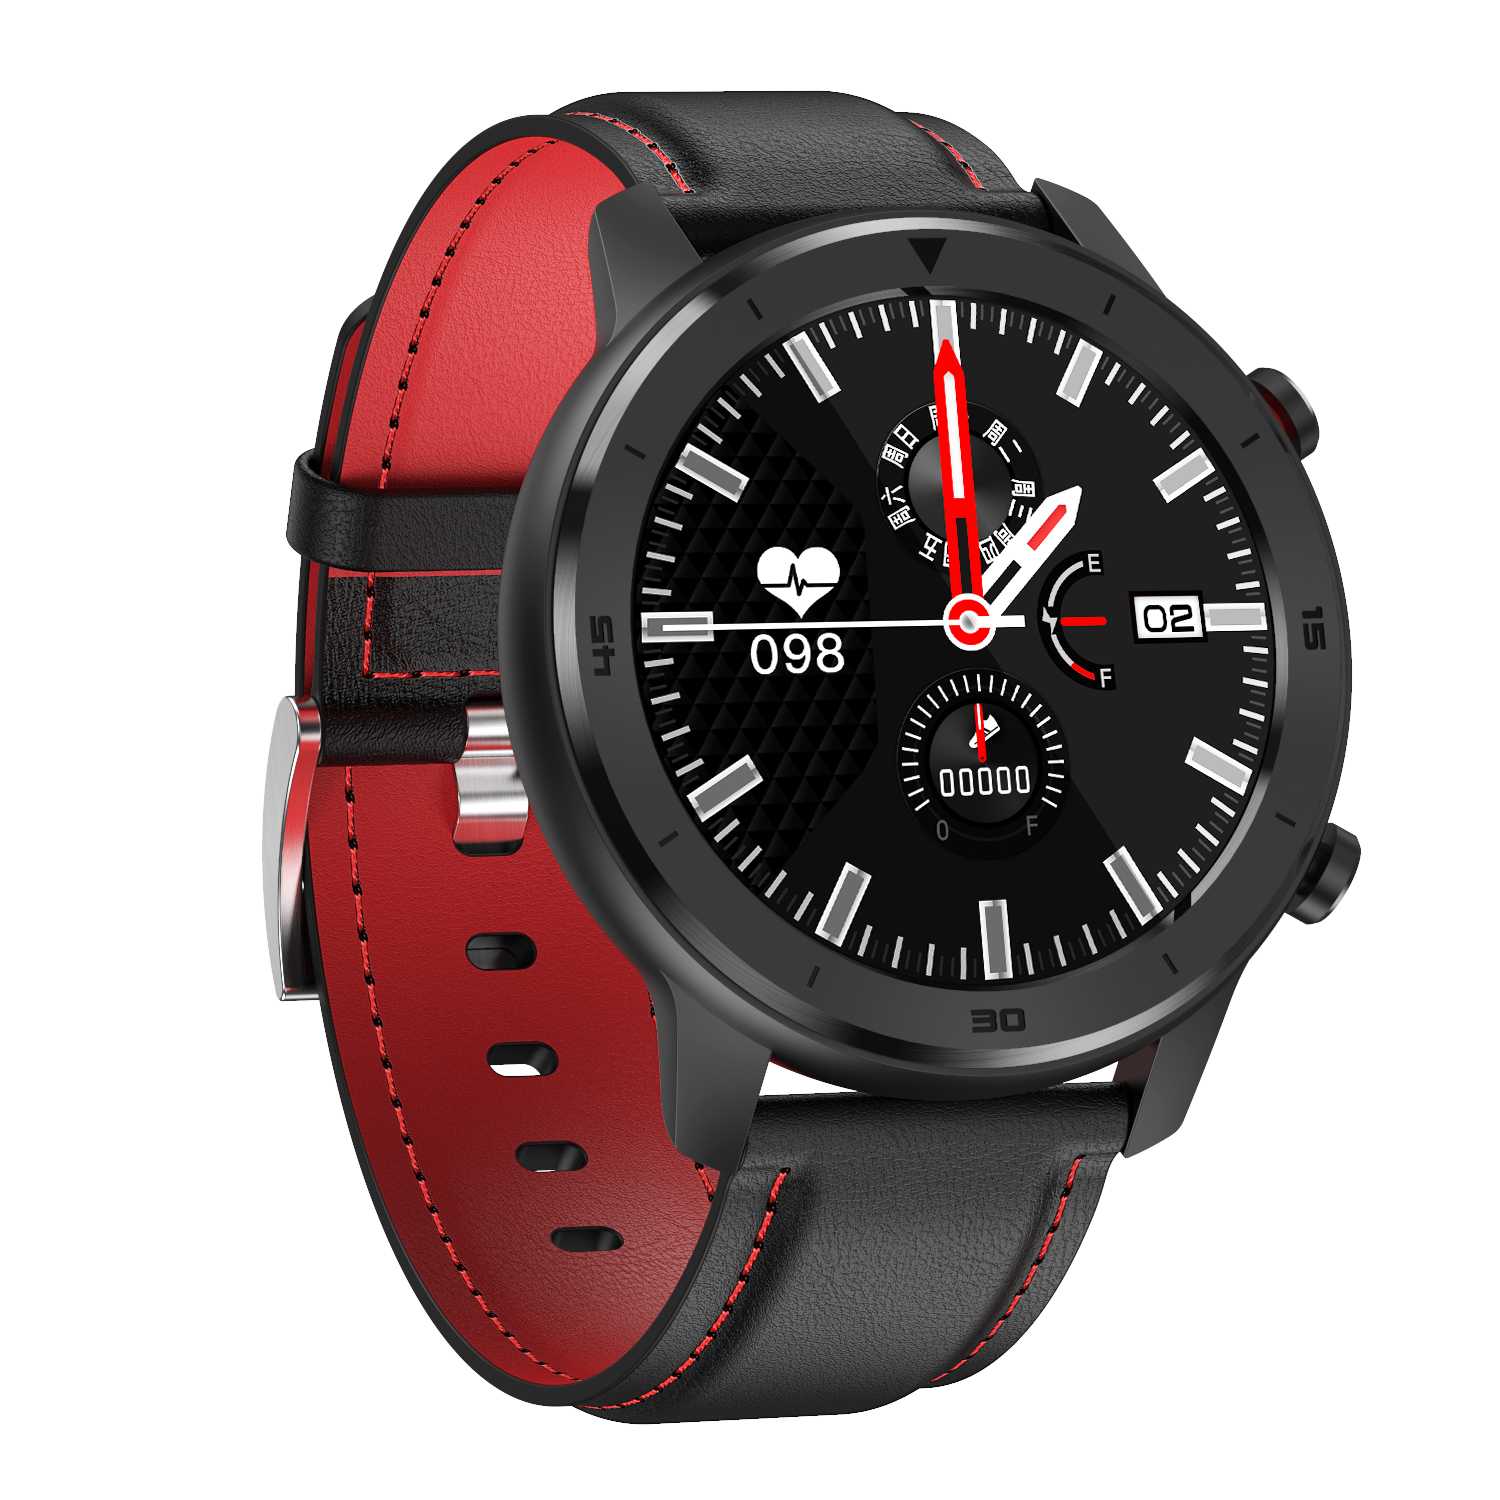 DT78 montre intelligente hommes Bracelet Fitness activité Tracker femmes dispositifs portables Smartwatch bande moniteur de fréquence cardiaque montre de Sport: Black Red Leather